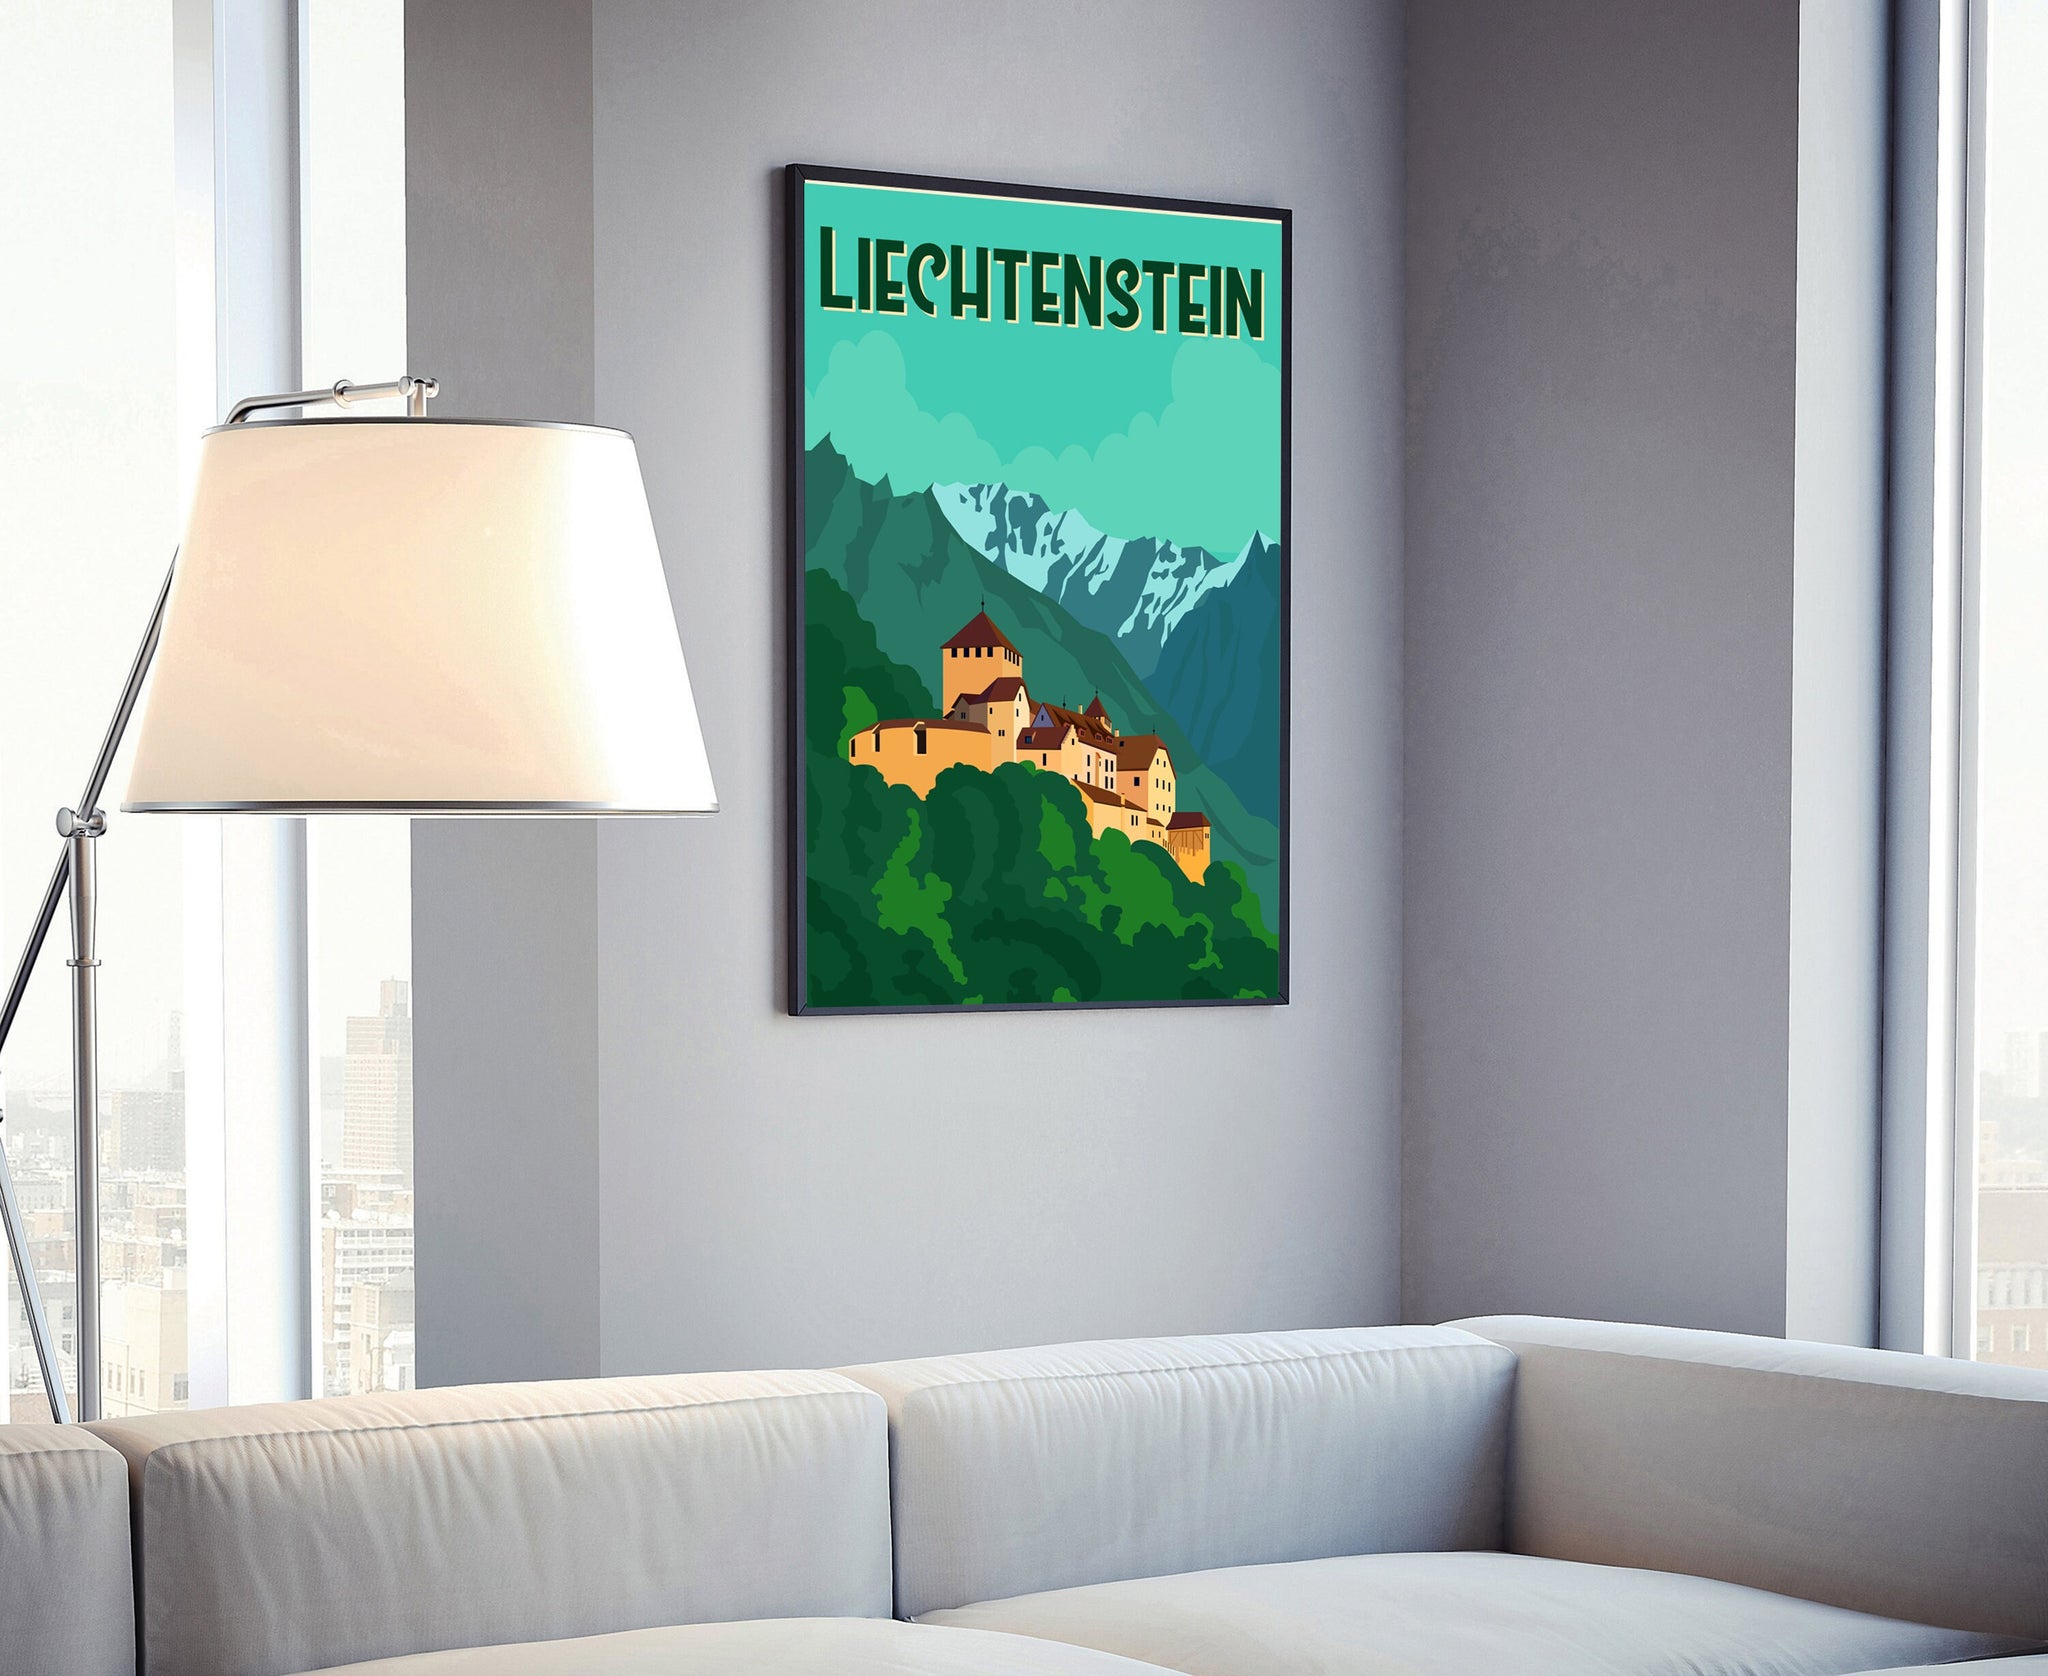 LIECHTENSTEIN TRAVEL POSTER, Liechtenstein cityscape landmark poster wall art, Home wall art, Office wall Decoration, Christmas gift poster